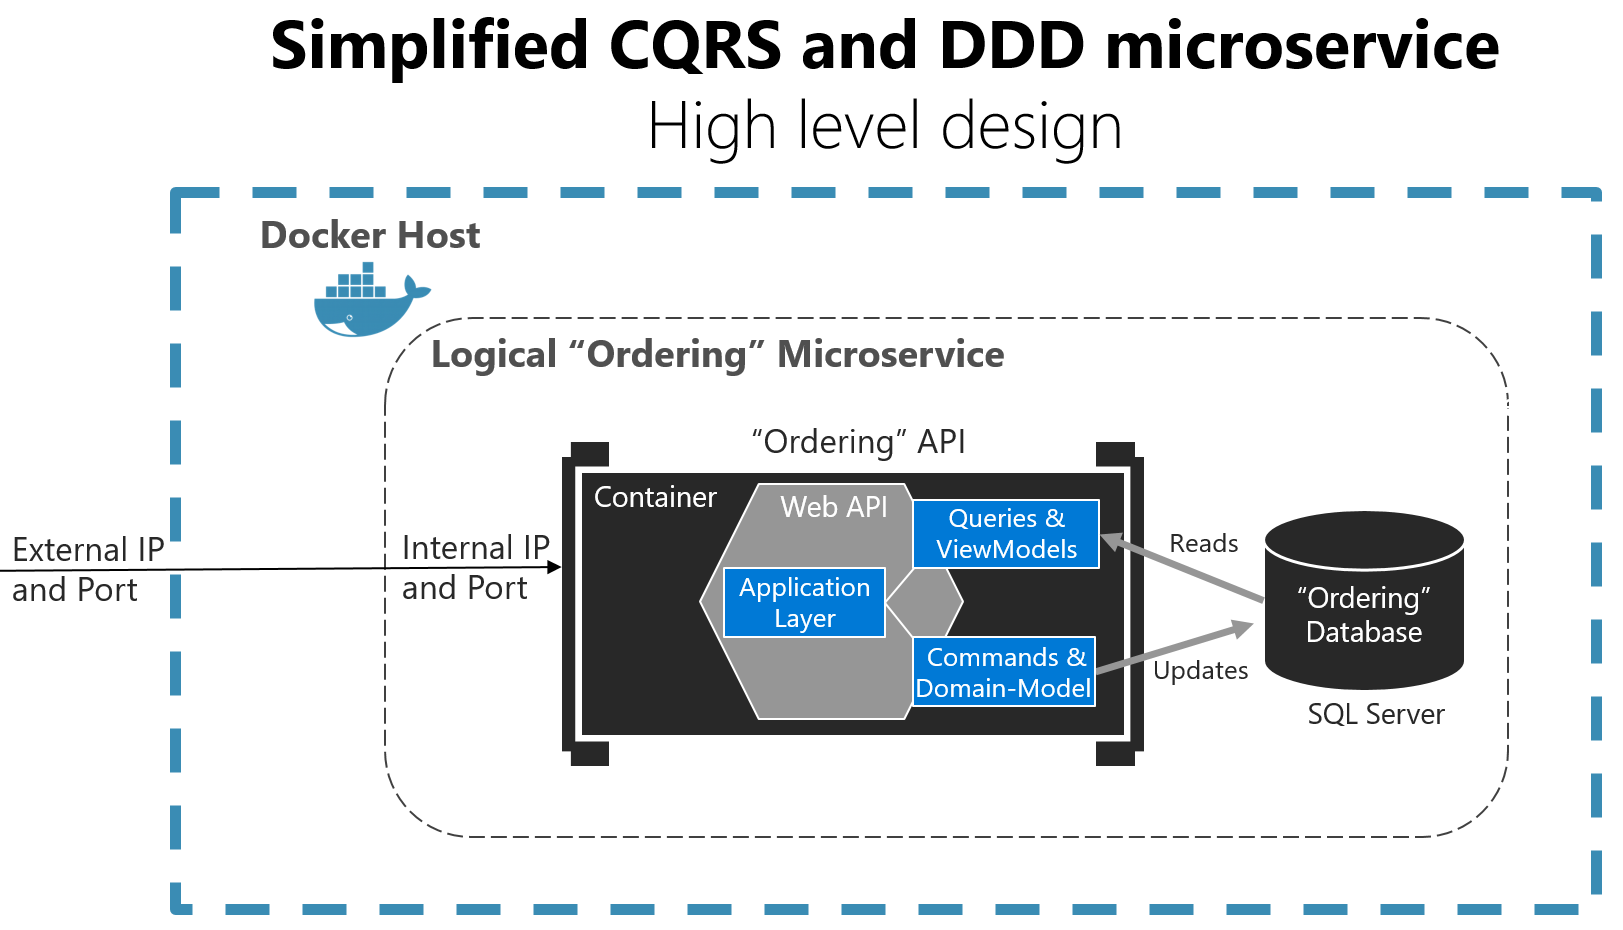 Diagrama que muestra un microservicio CQRS y DDD simplificado de alto nivel.